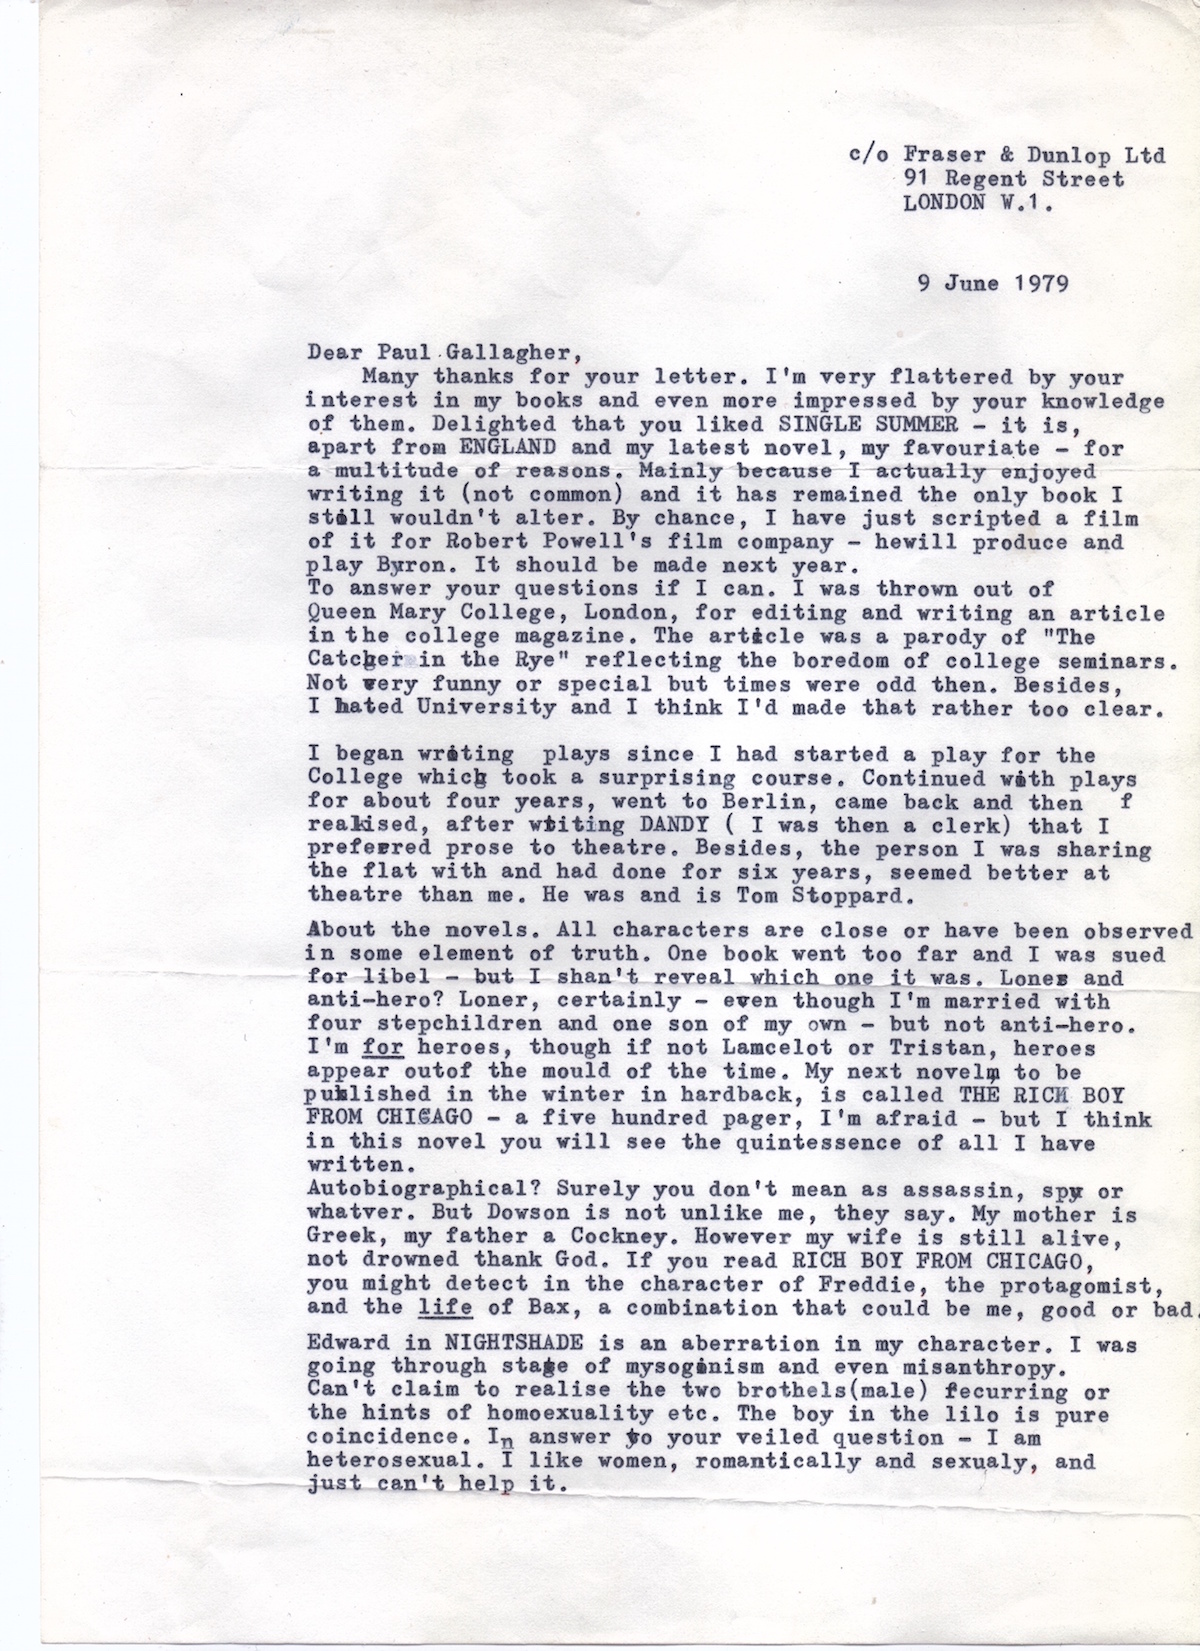 Derek Marlowe's reply to my fan mail, June 1979